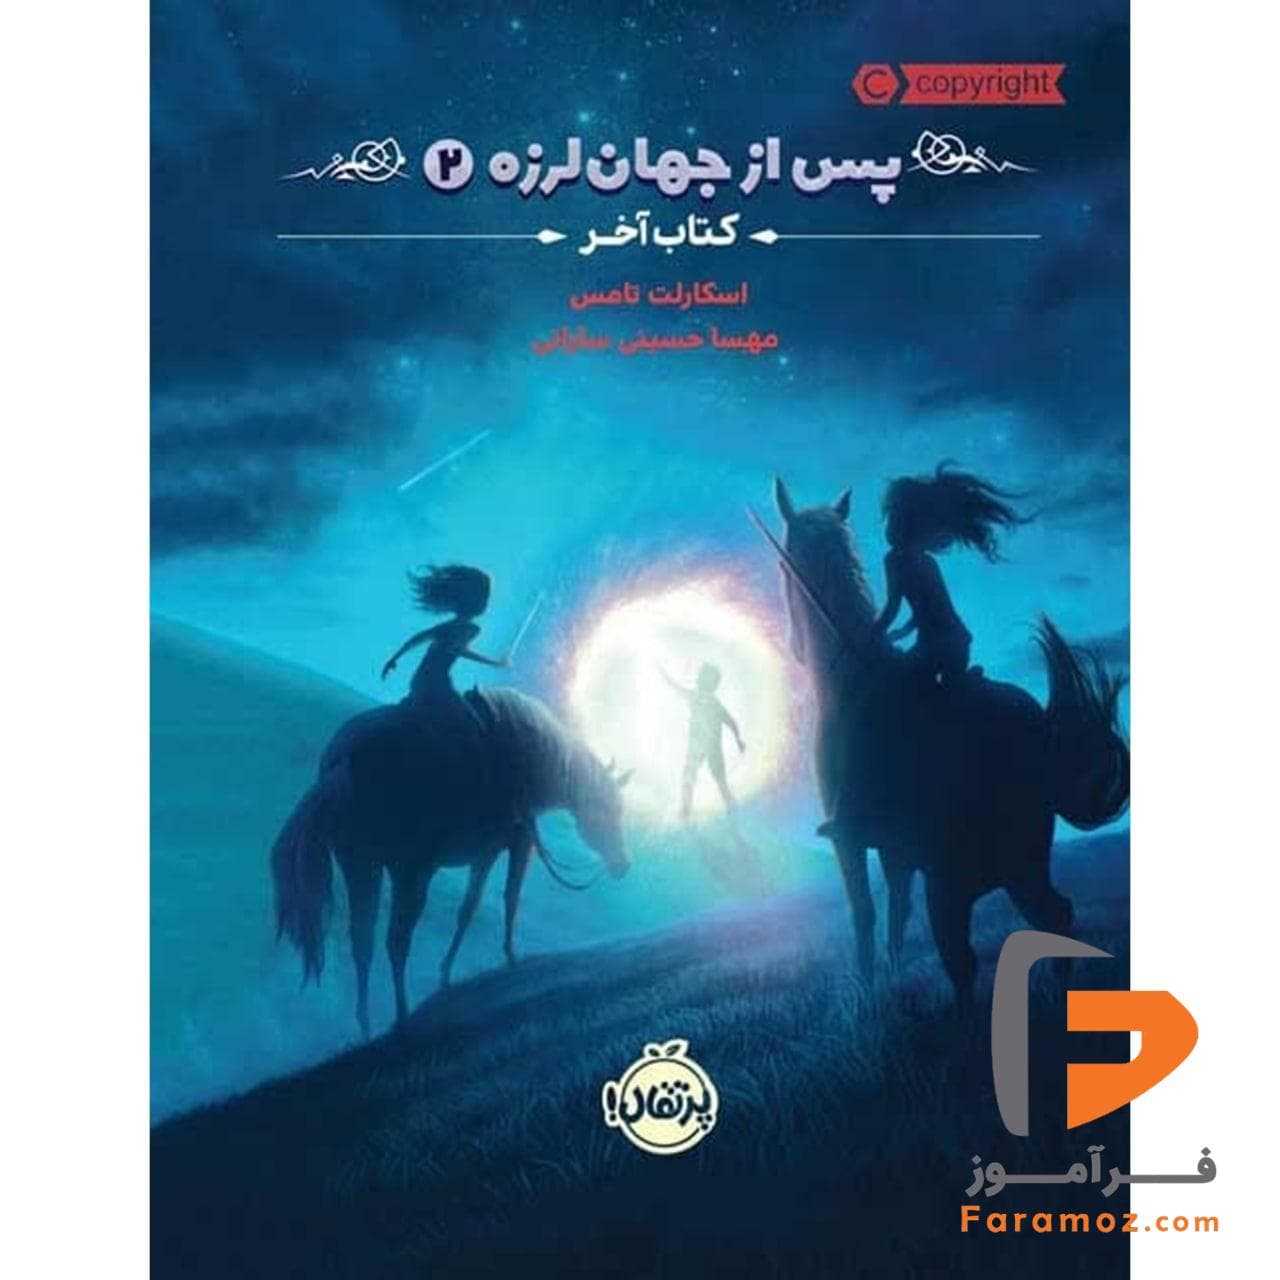 پس از جهان لرزه 2 کتاب آخر مهسا حسینی